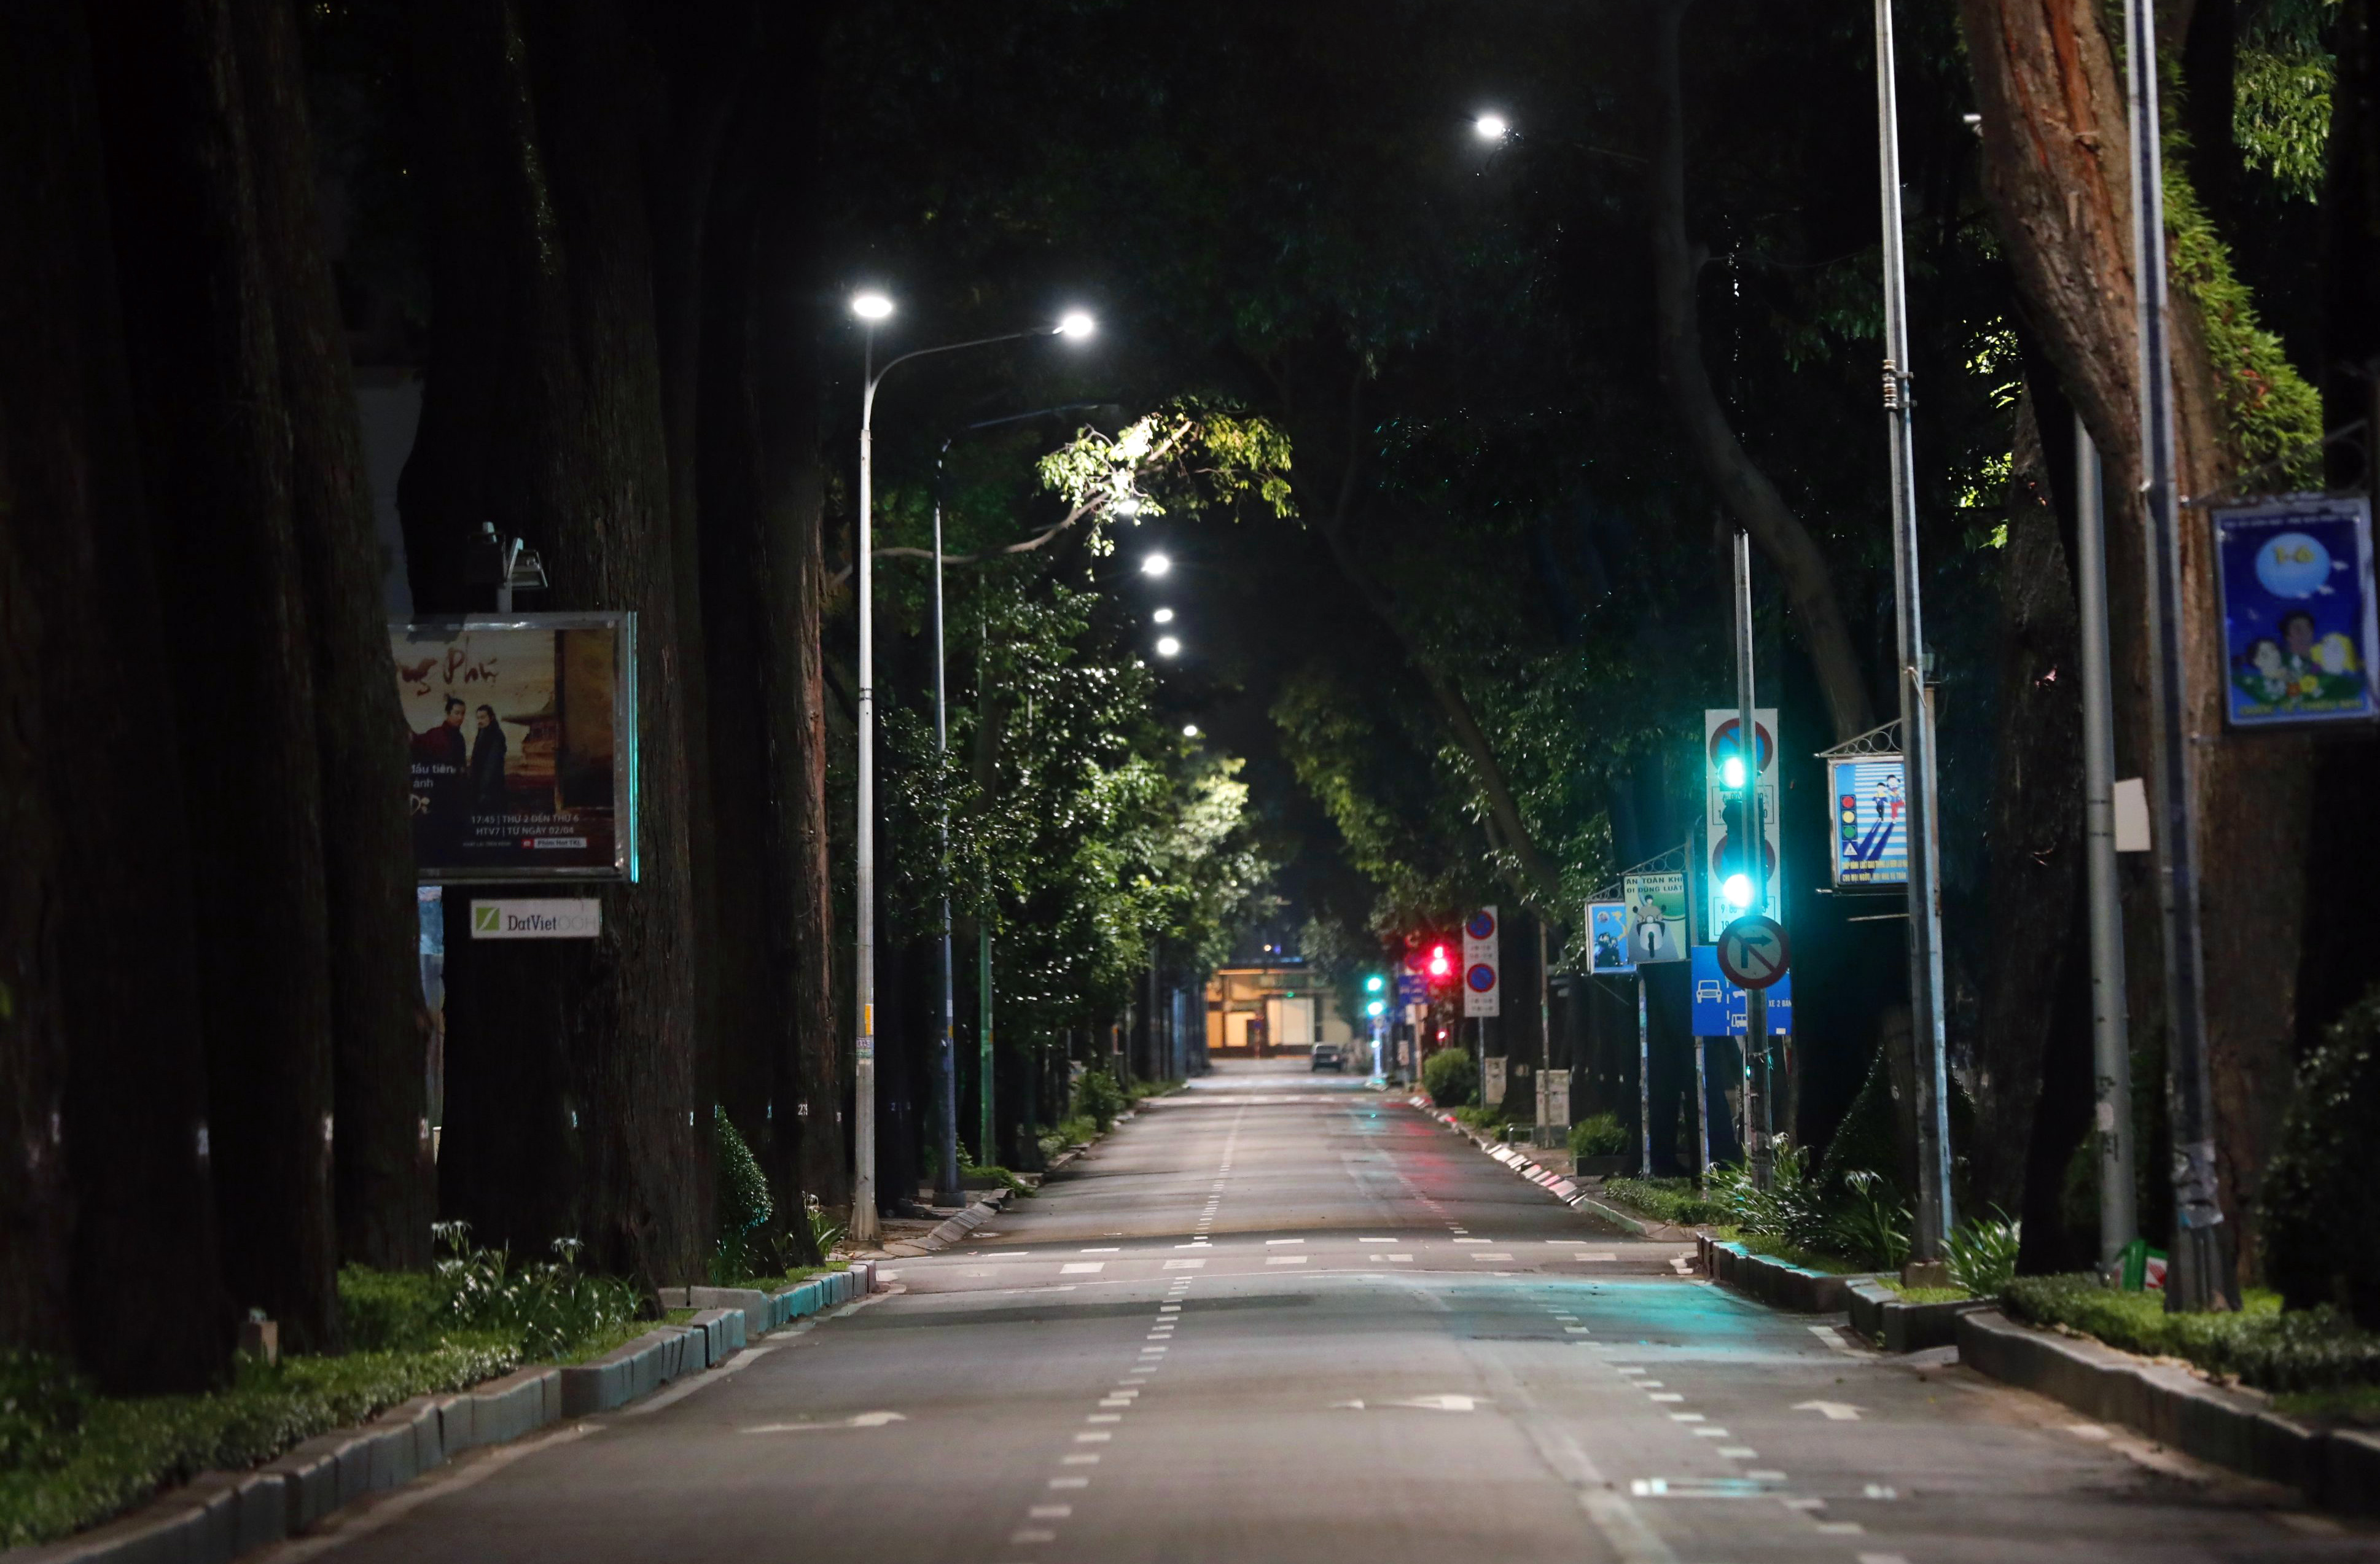 Đường phố TP.HCM - Với độ đông đúc và tấp nập không kém Hà Nội, TP.HCM lại có những tuyến phố hiện đại, sáng tạo hơn. Hãy thưởng thức bản sắc Văn hóa Sài Gòn và những quán cà phê đặc trưng của thành phố này.